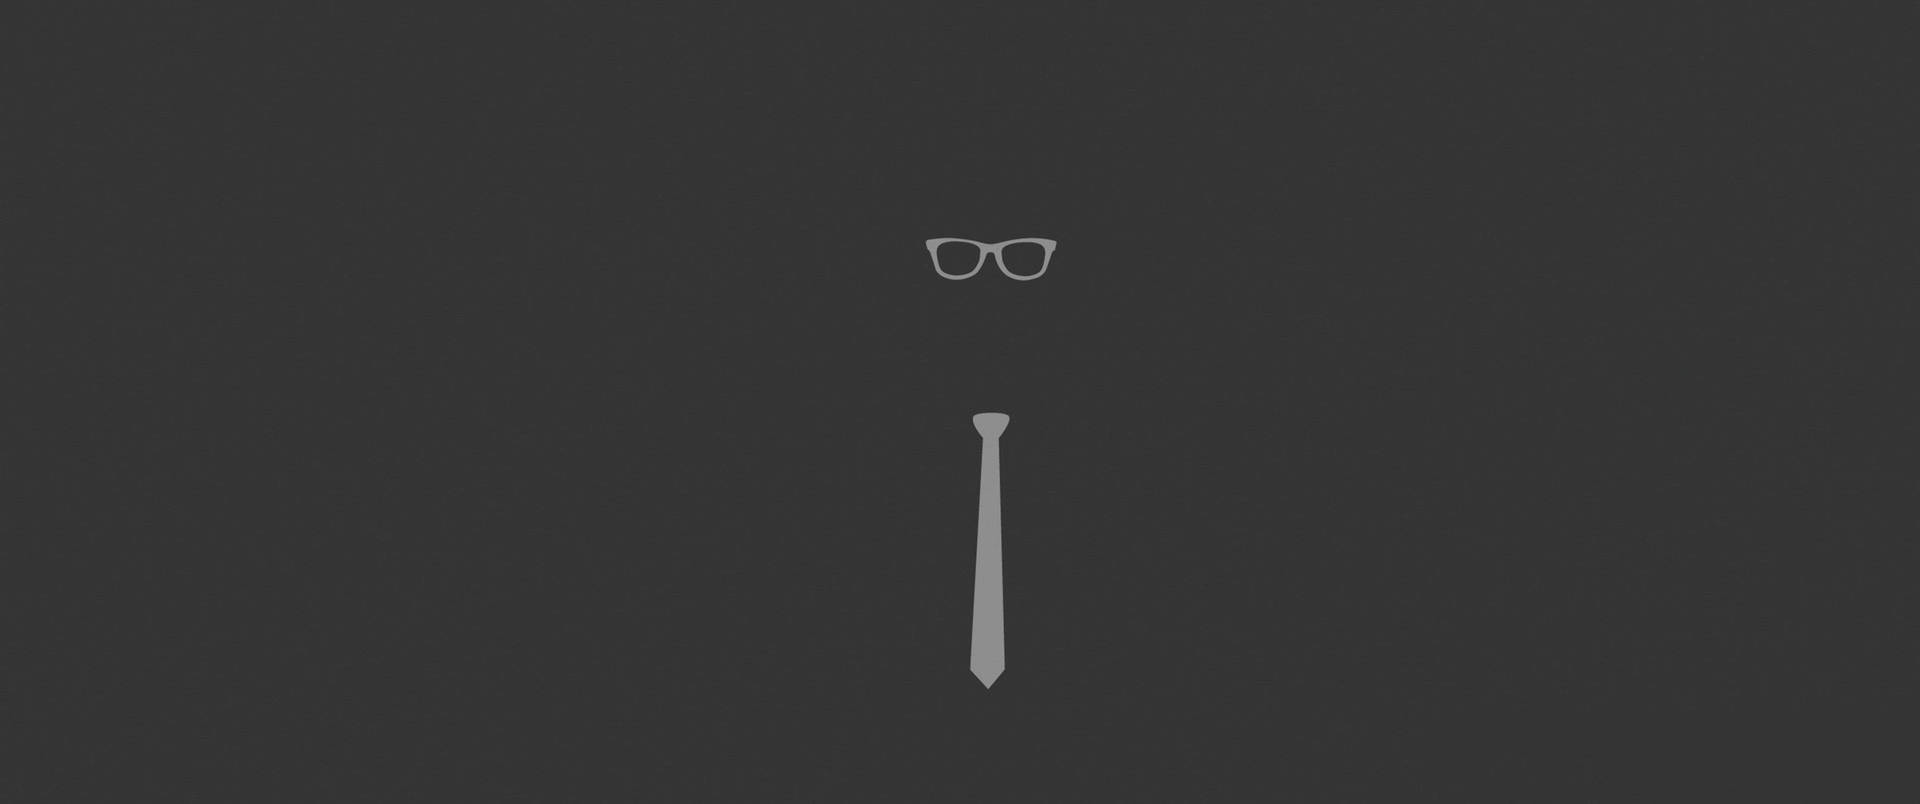 3440x1440 Minimalist Eyeglass And Tie Background